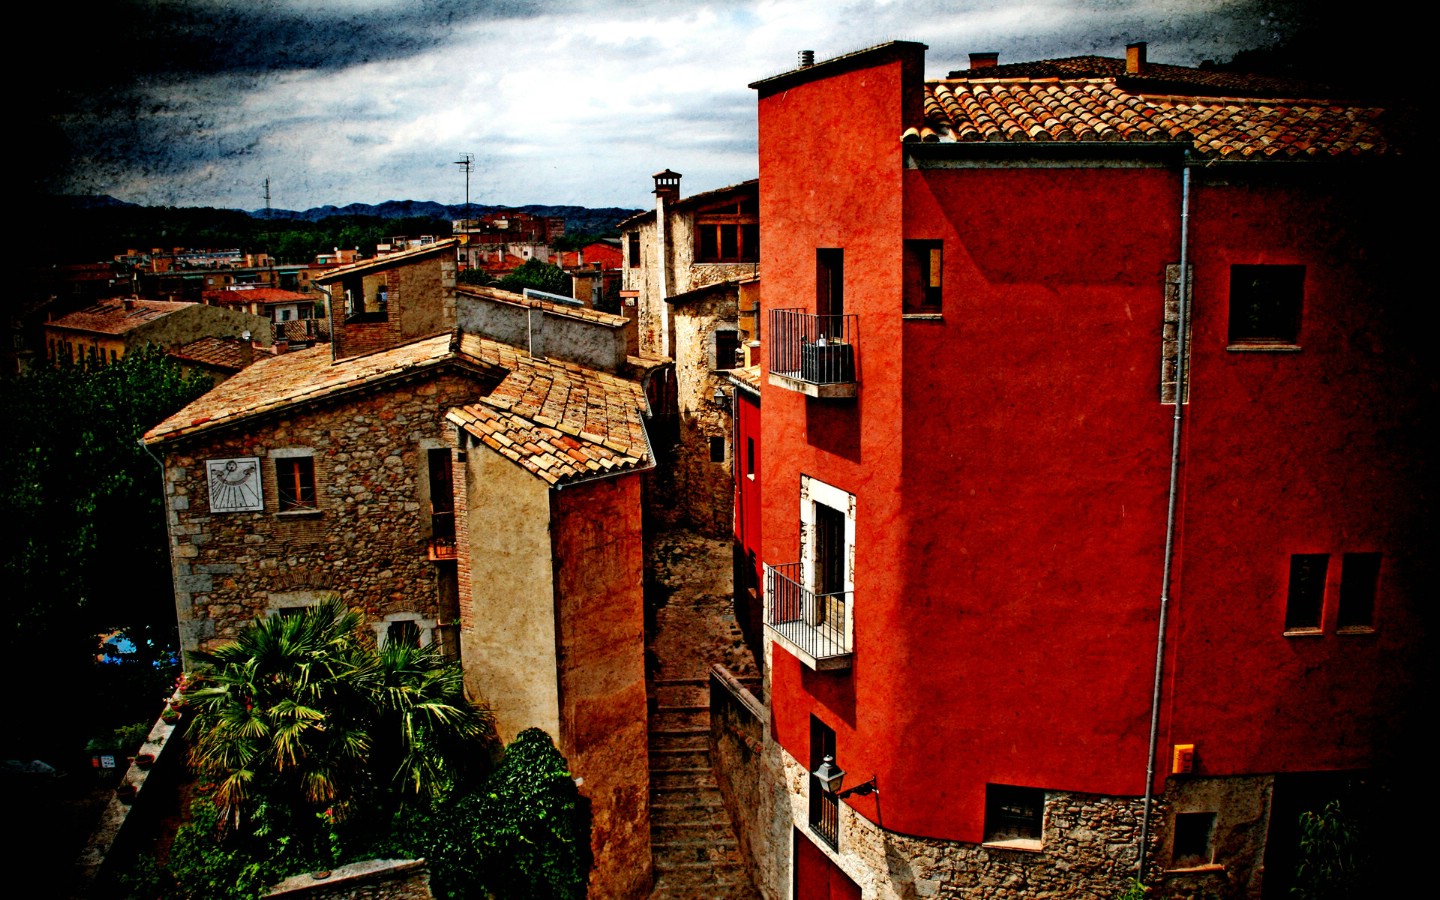 壁纸1440x900HDR 西班牙城市映像 赫罗纳的红房子 西班牙 Girona 赫罗纳城市风景壁纸 HDR 西班牙城市映像壁纸 HDR 西班牙城市映像图片 HDR 西班牙城市映像素材 人文壁纸 人文图库 人文图片素材桌面壁纸